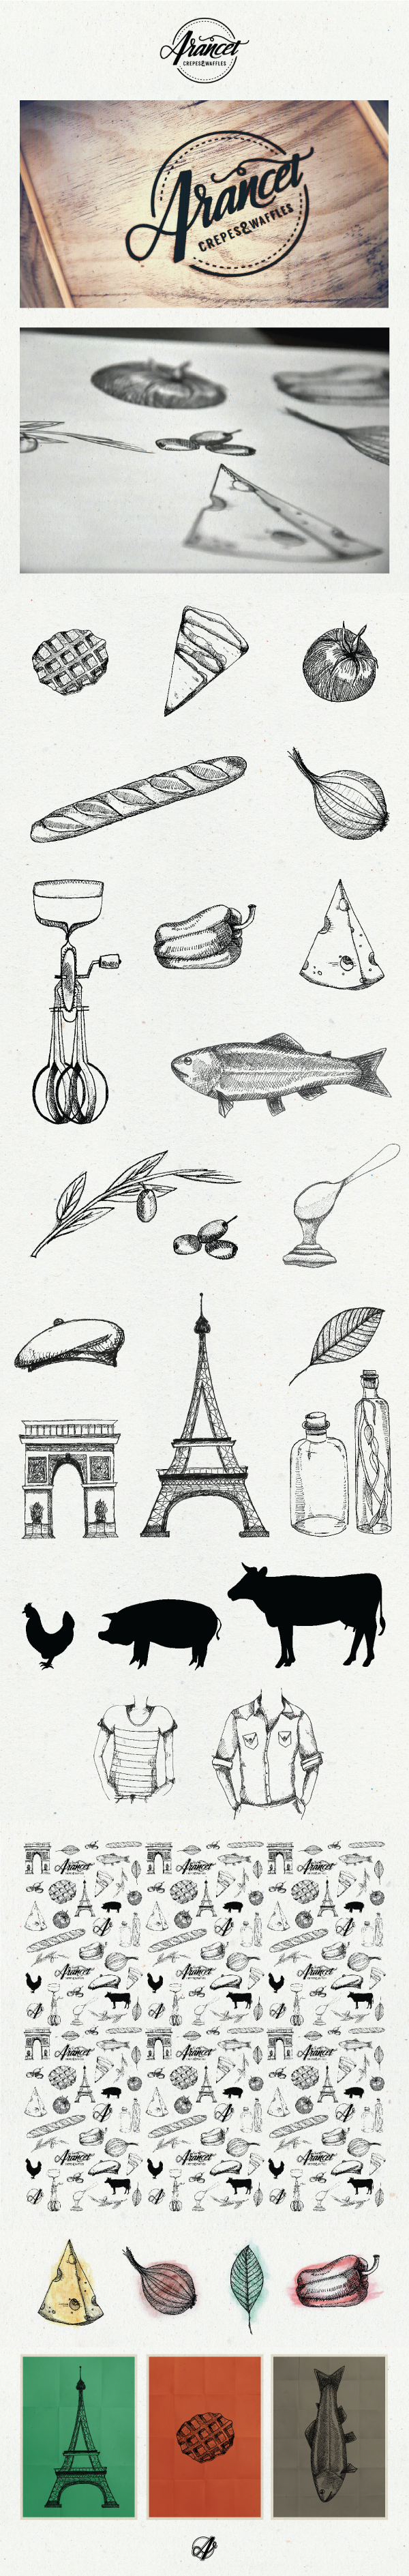 identidad ilustracion comida restaurante Resto Food  diseño grafico graphic design